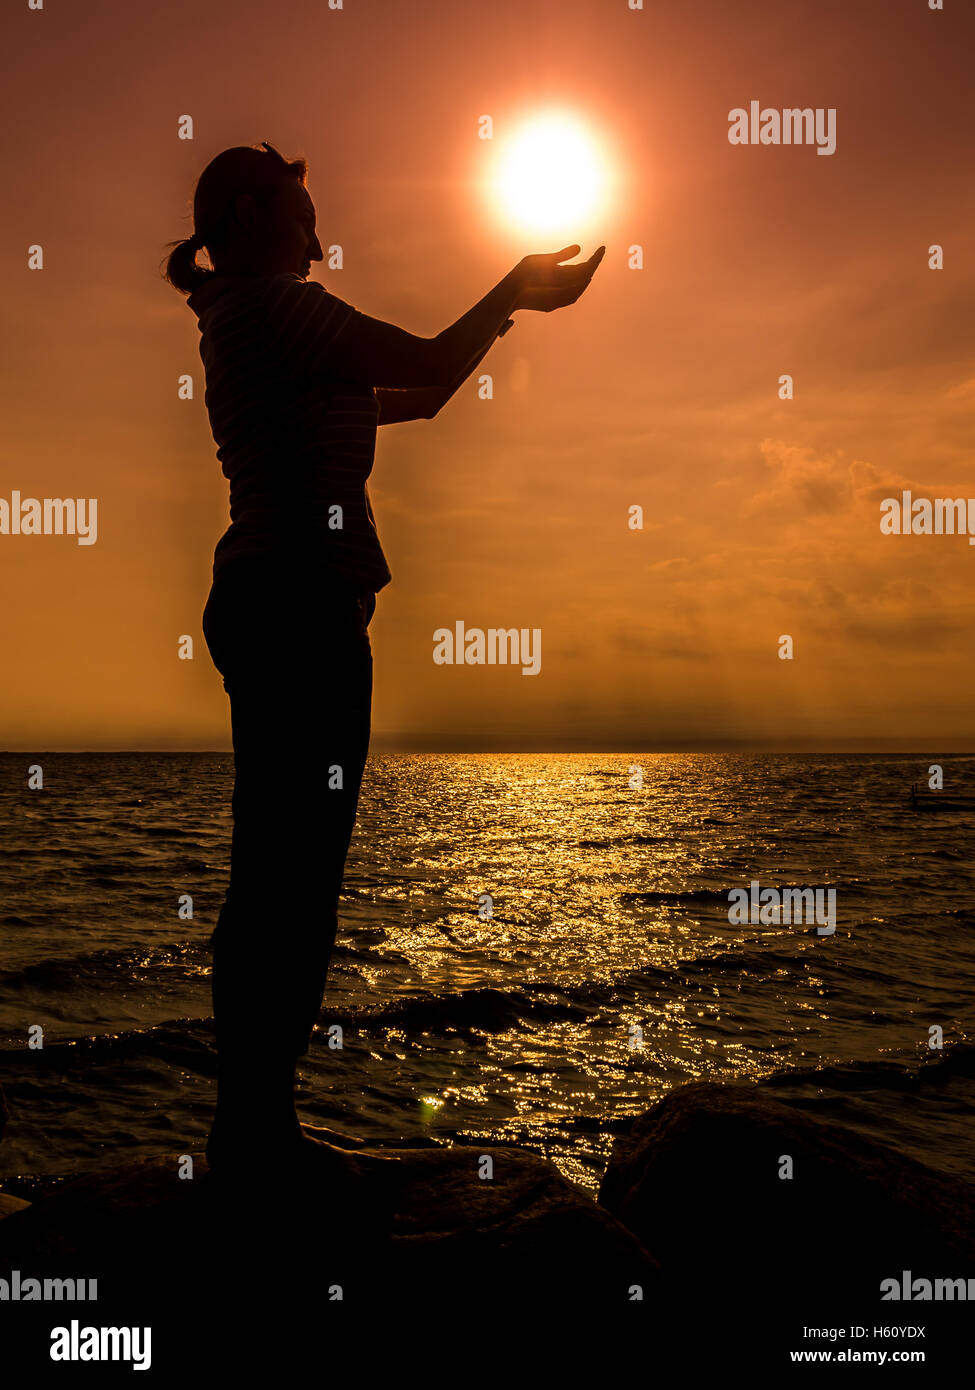 Silueta de mujer joven de pie junto a la orilla del mar sujetando el sol naciente sobre cielo naranja Foto de stock